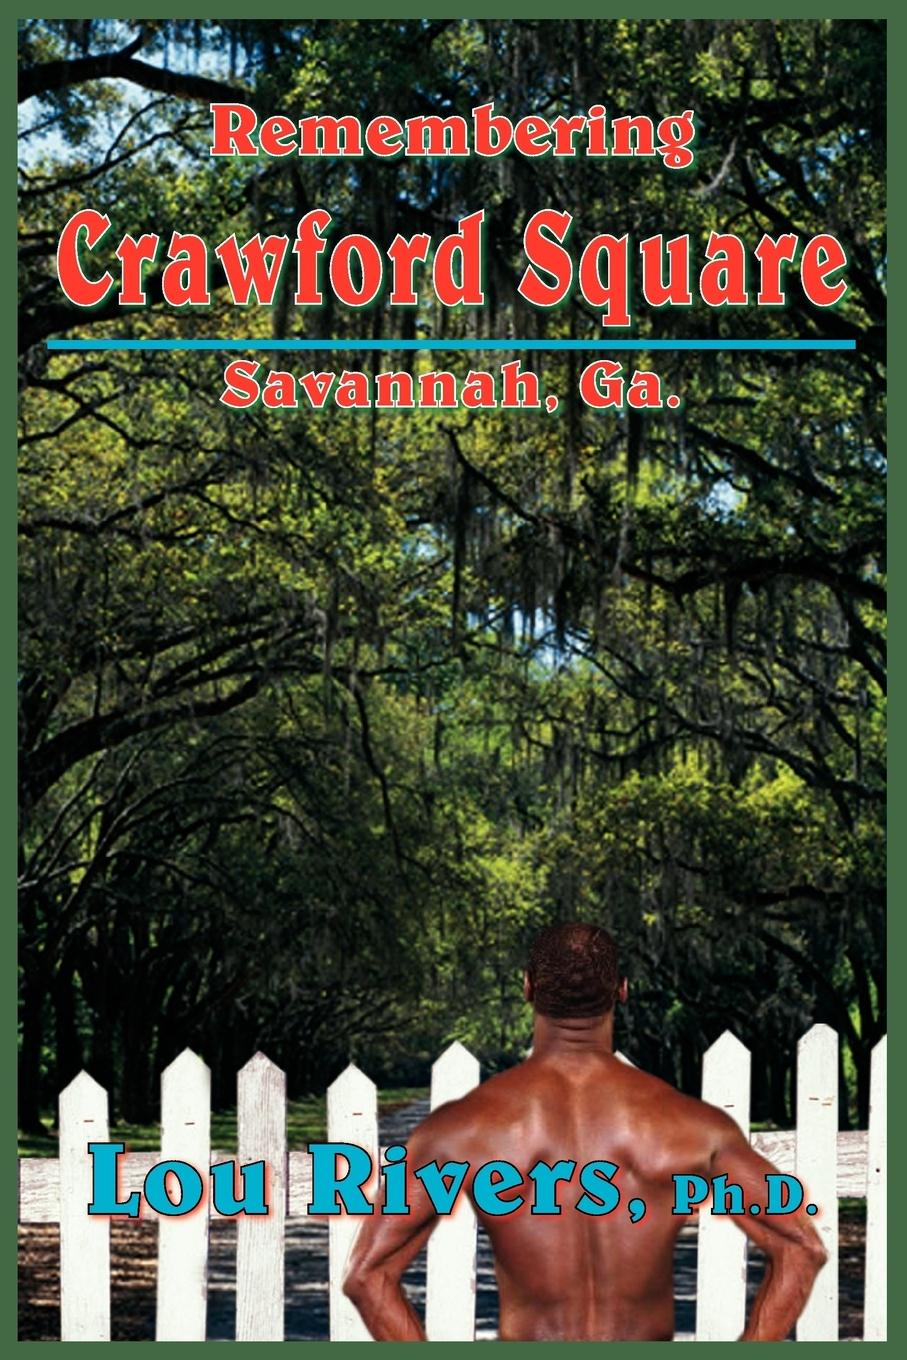 Remembering Crawford Square - Rivers Ph. D., Lou